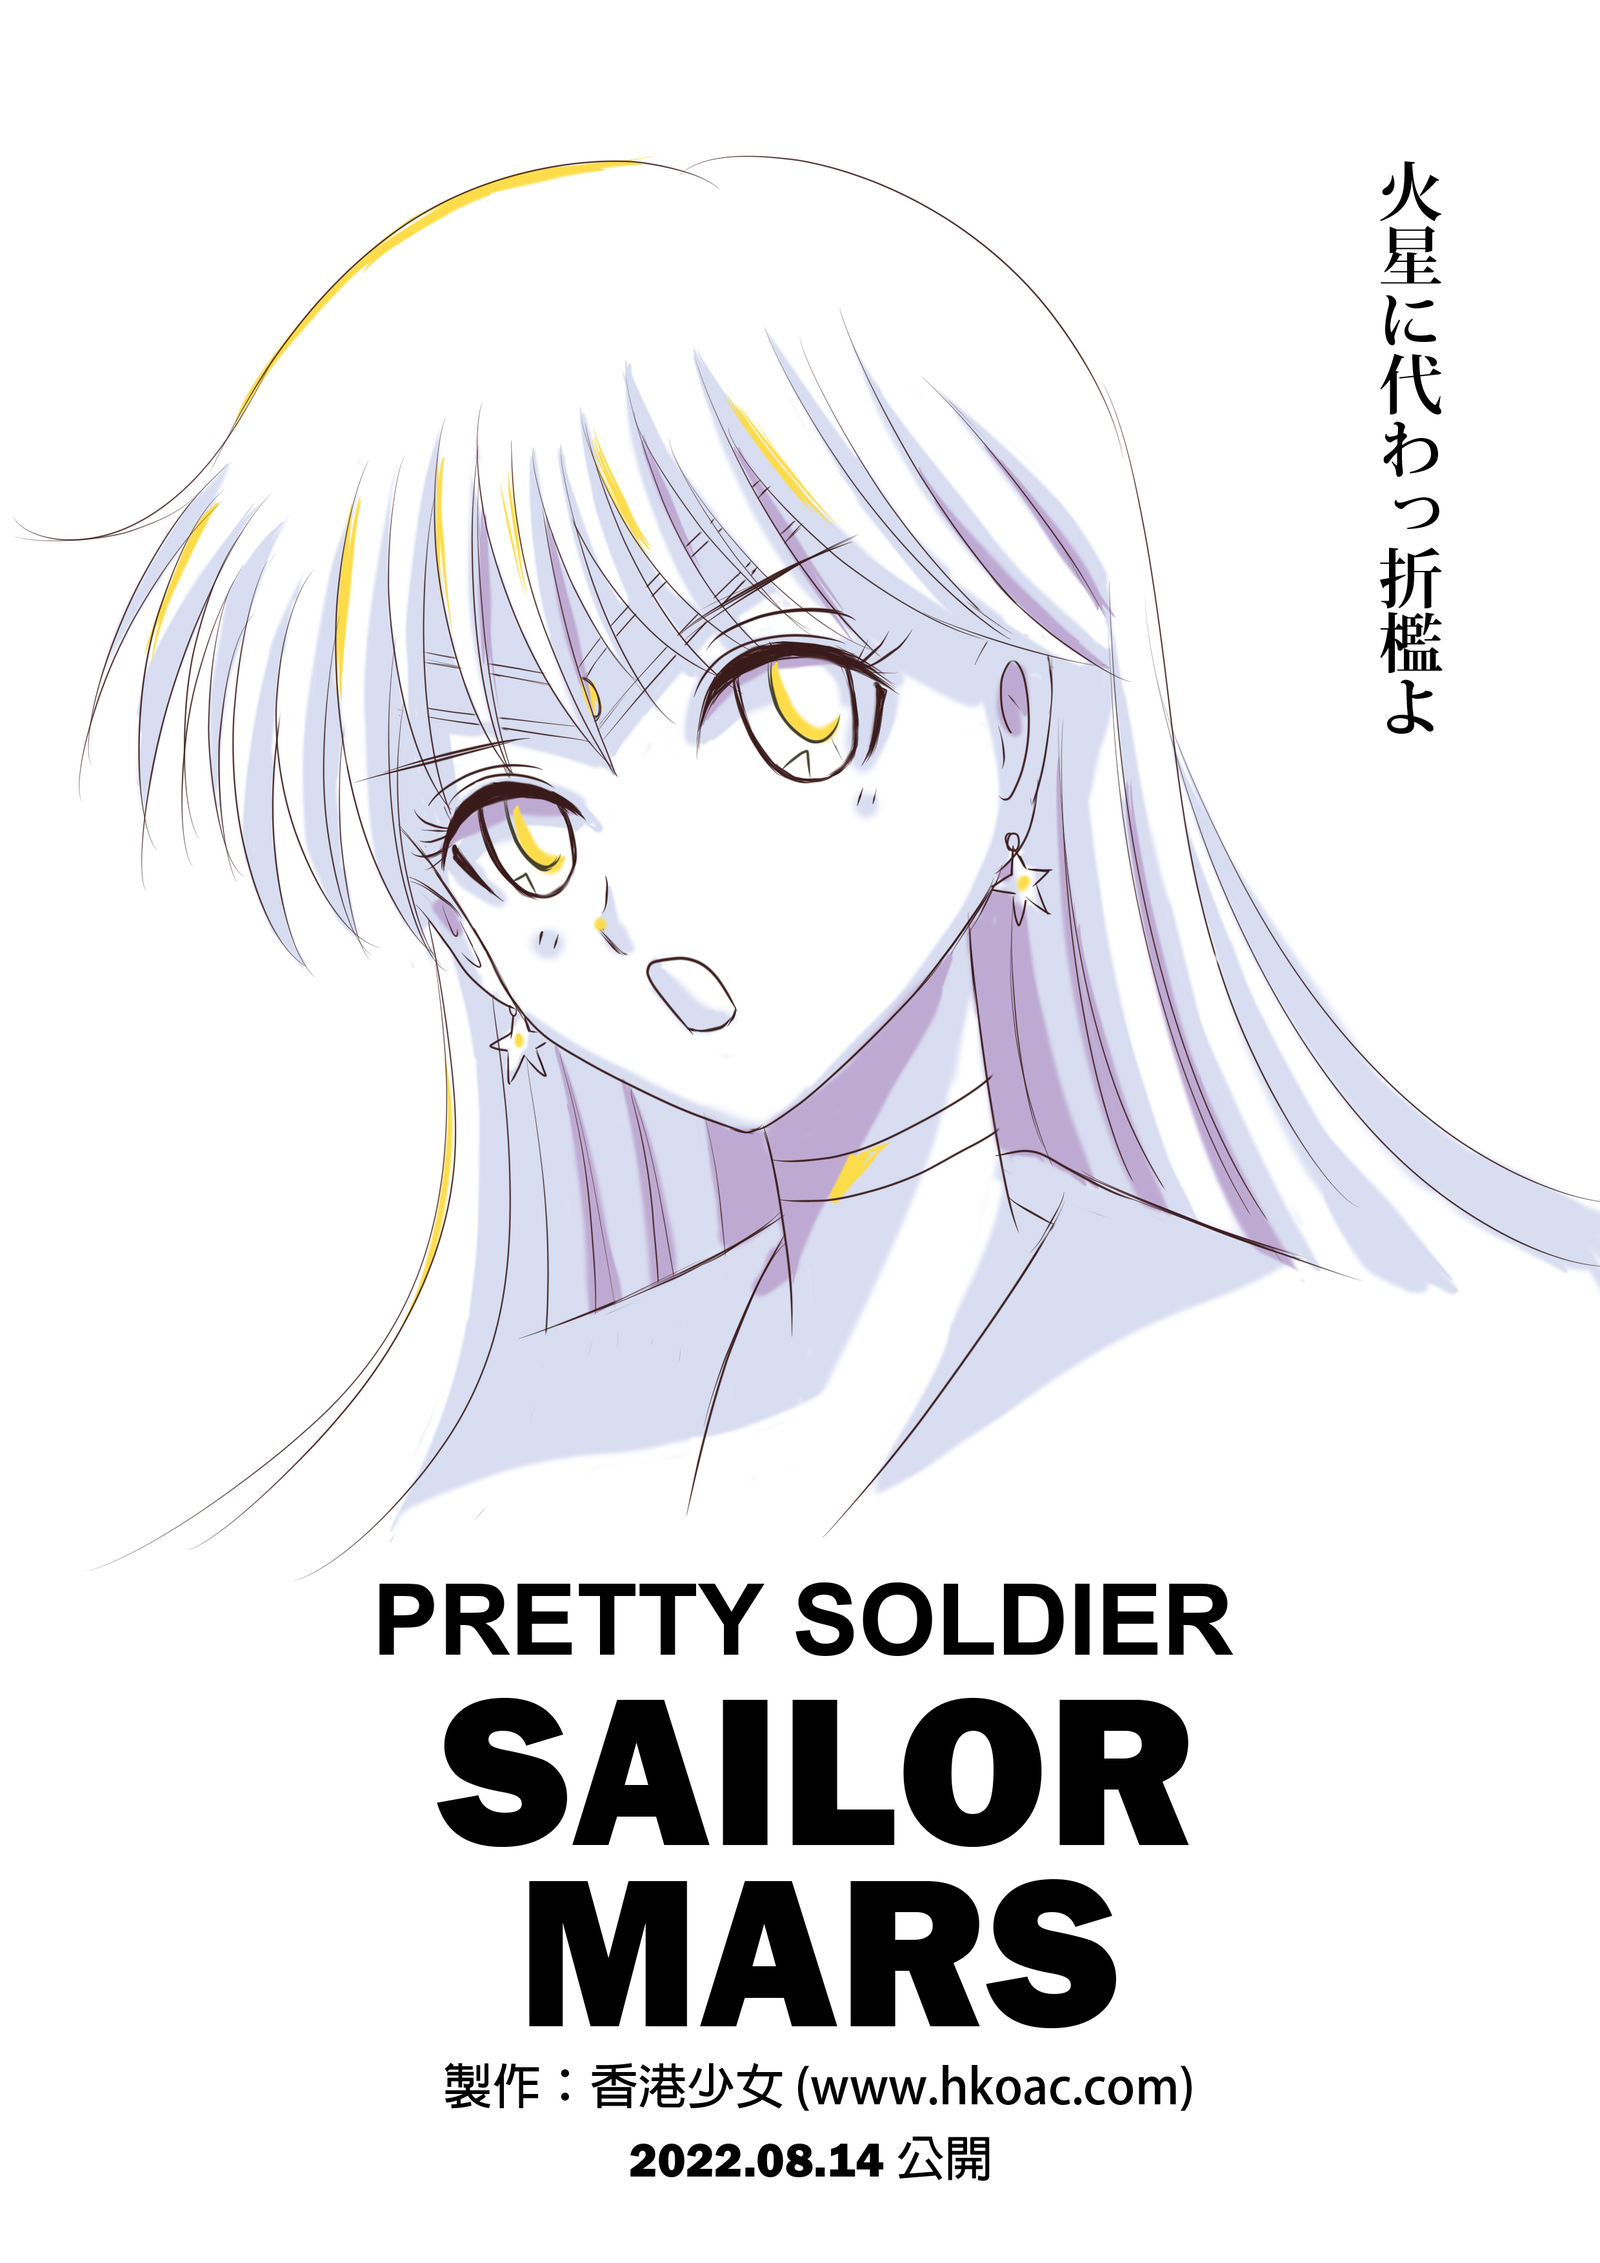 美少女战士火野丽 Sailor Mars 海报插画图片壁纸